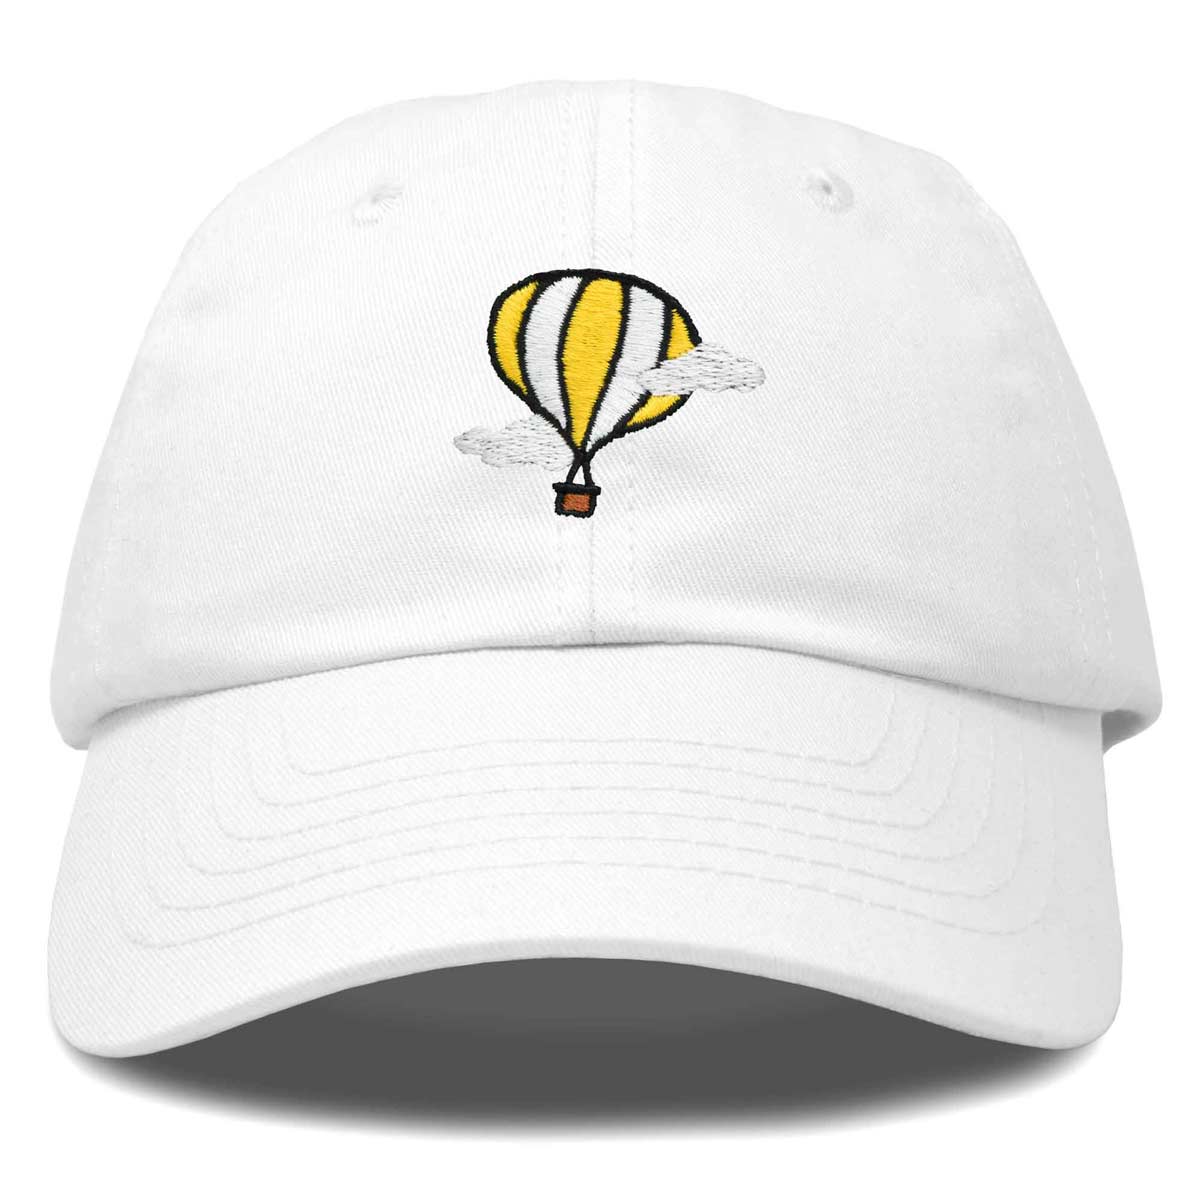 Dalix Hot Air Balloon Cap